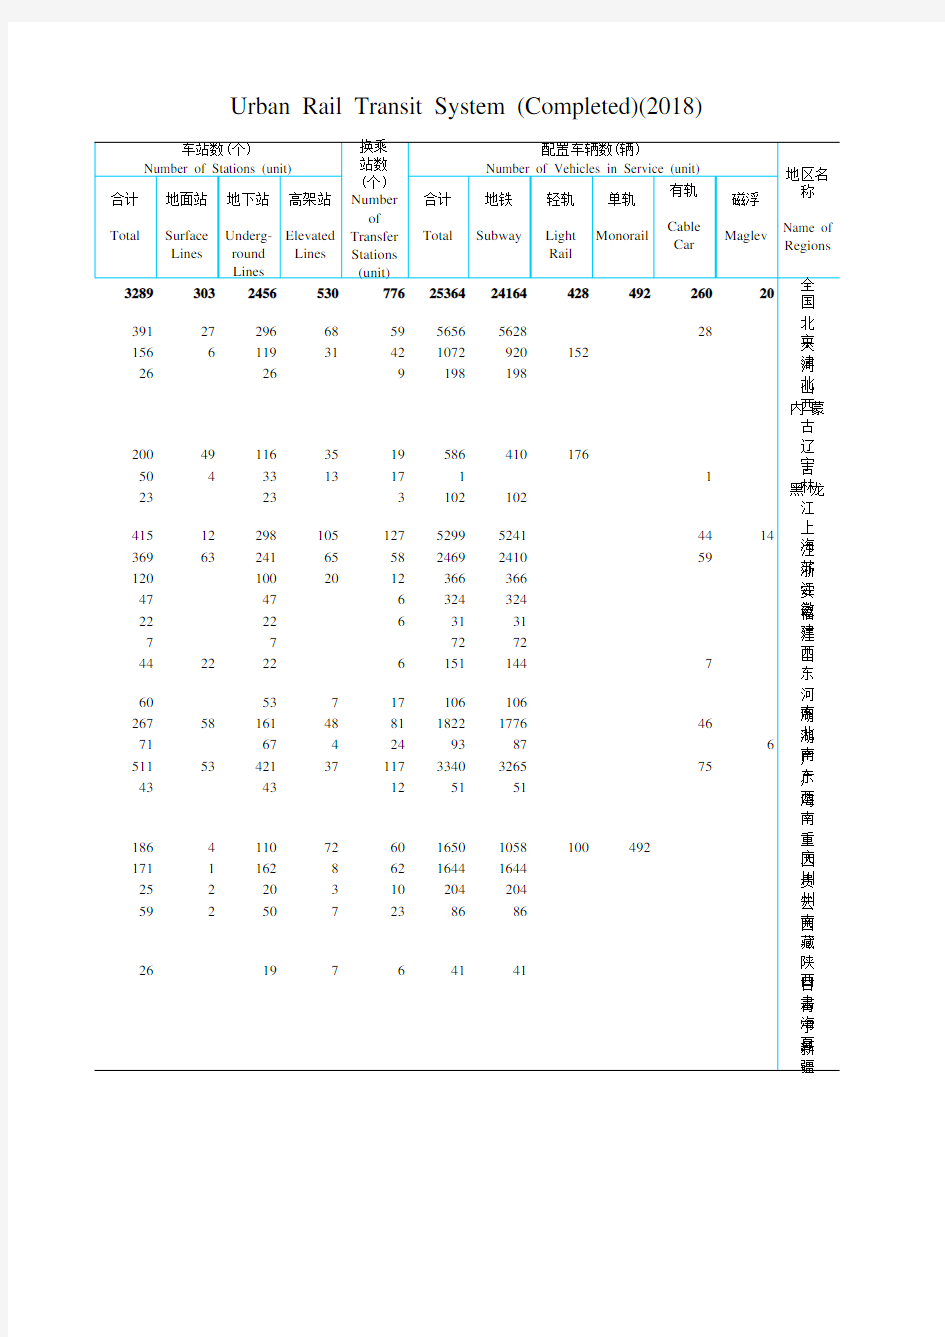 中国城市乡村建设统计年鉴数据：1-2-13  城市轨道交通(建成)(2018年)